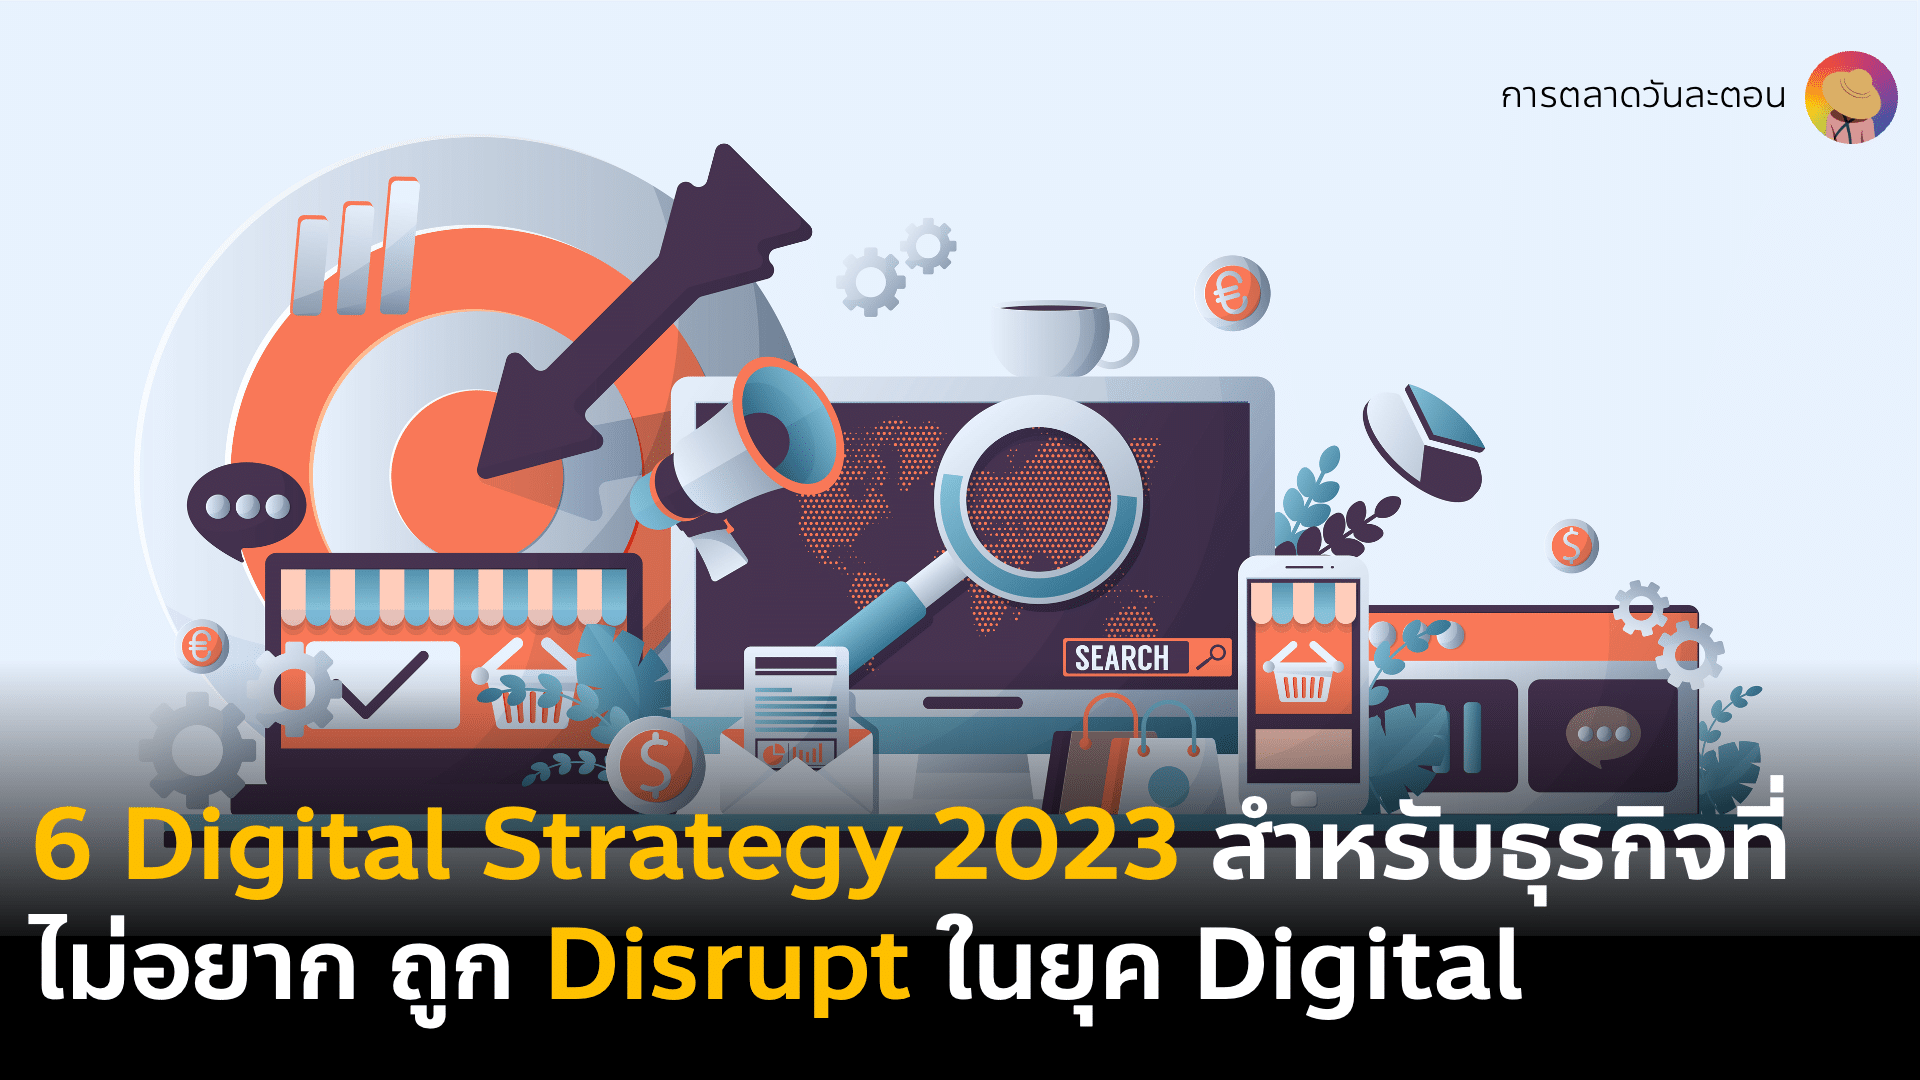 6 Digital Business & Marketing Strategy สำหรับธุรกิจที่ไม่อยากถูก Disrupt